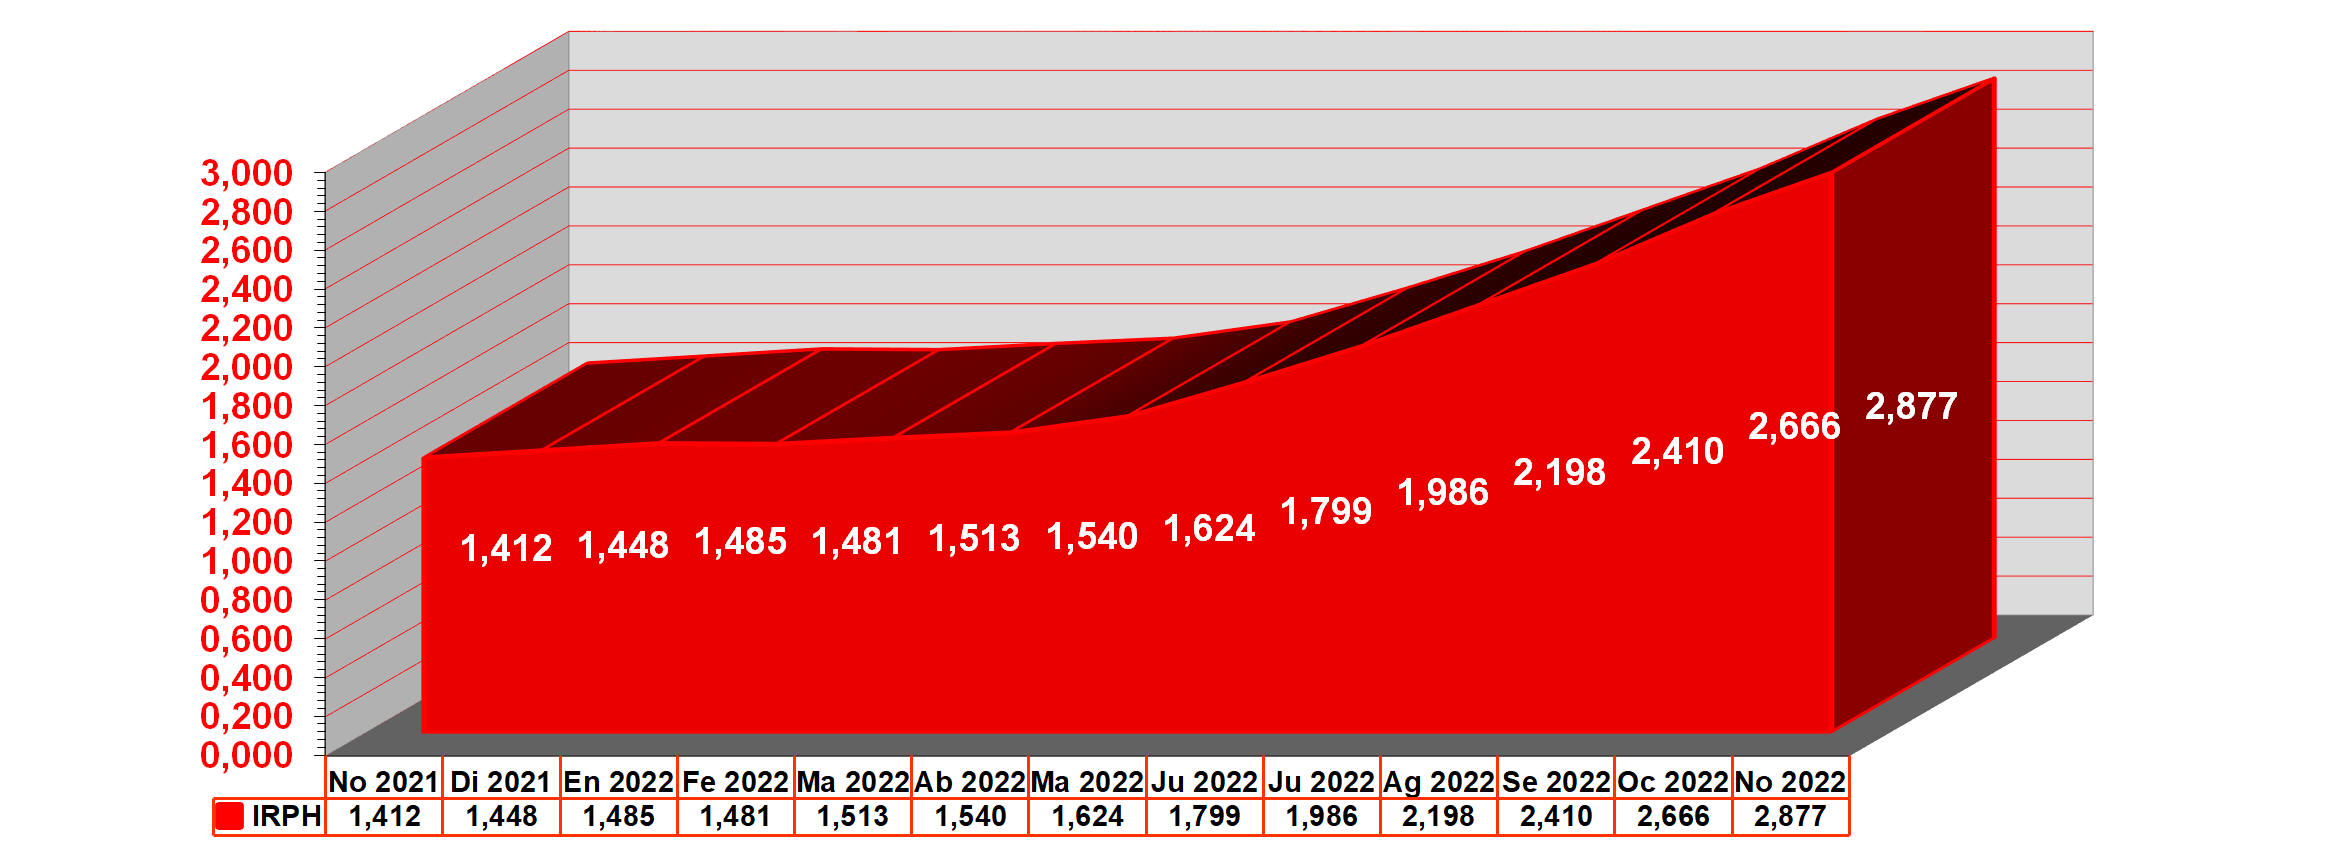 grafico anual IRPH desde noviembre 2021 hasta noviembre 2022